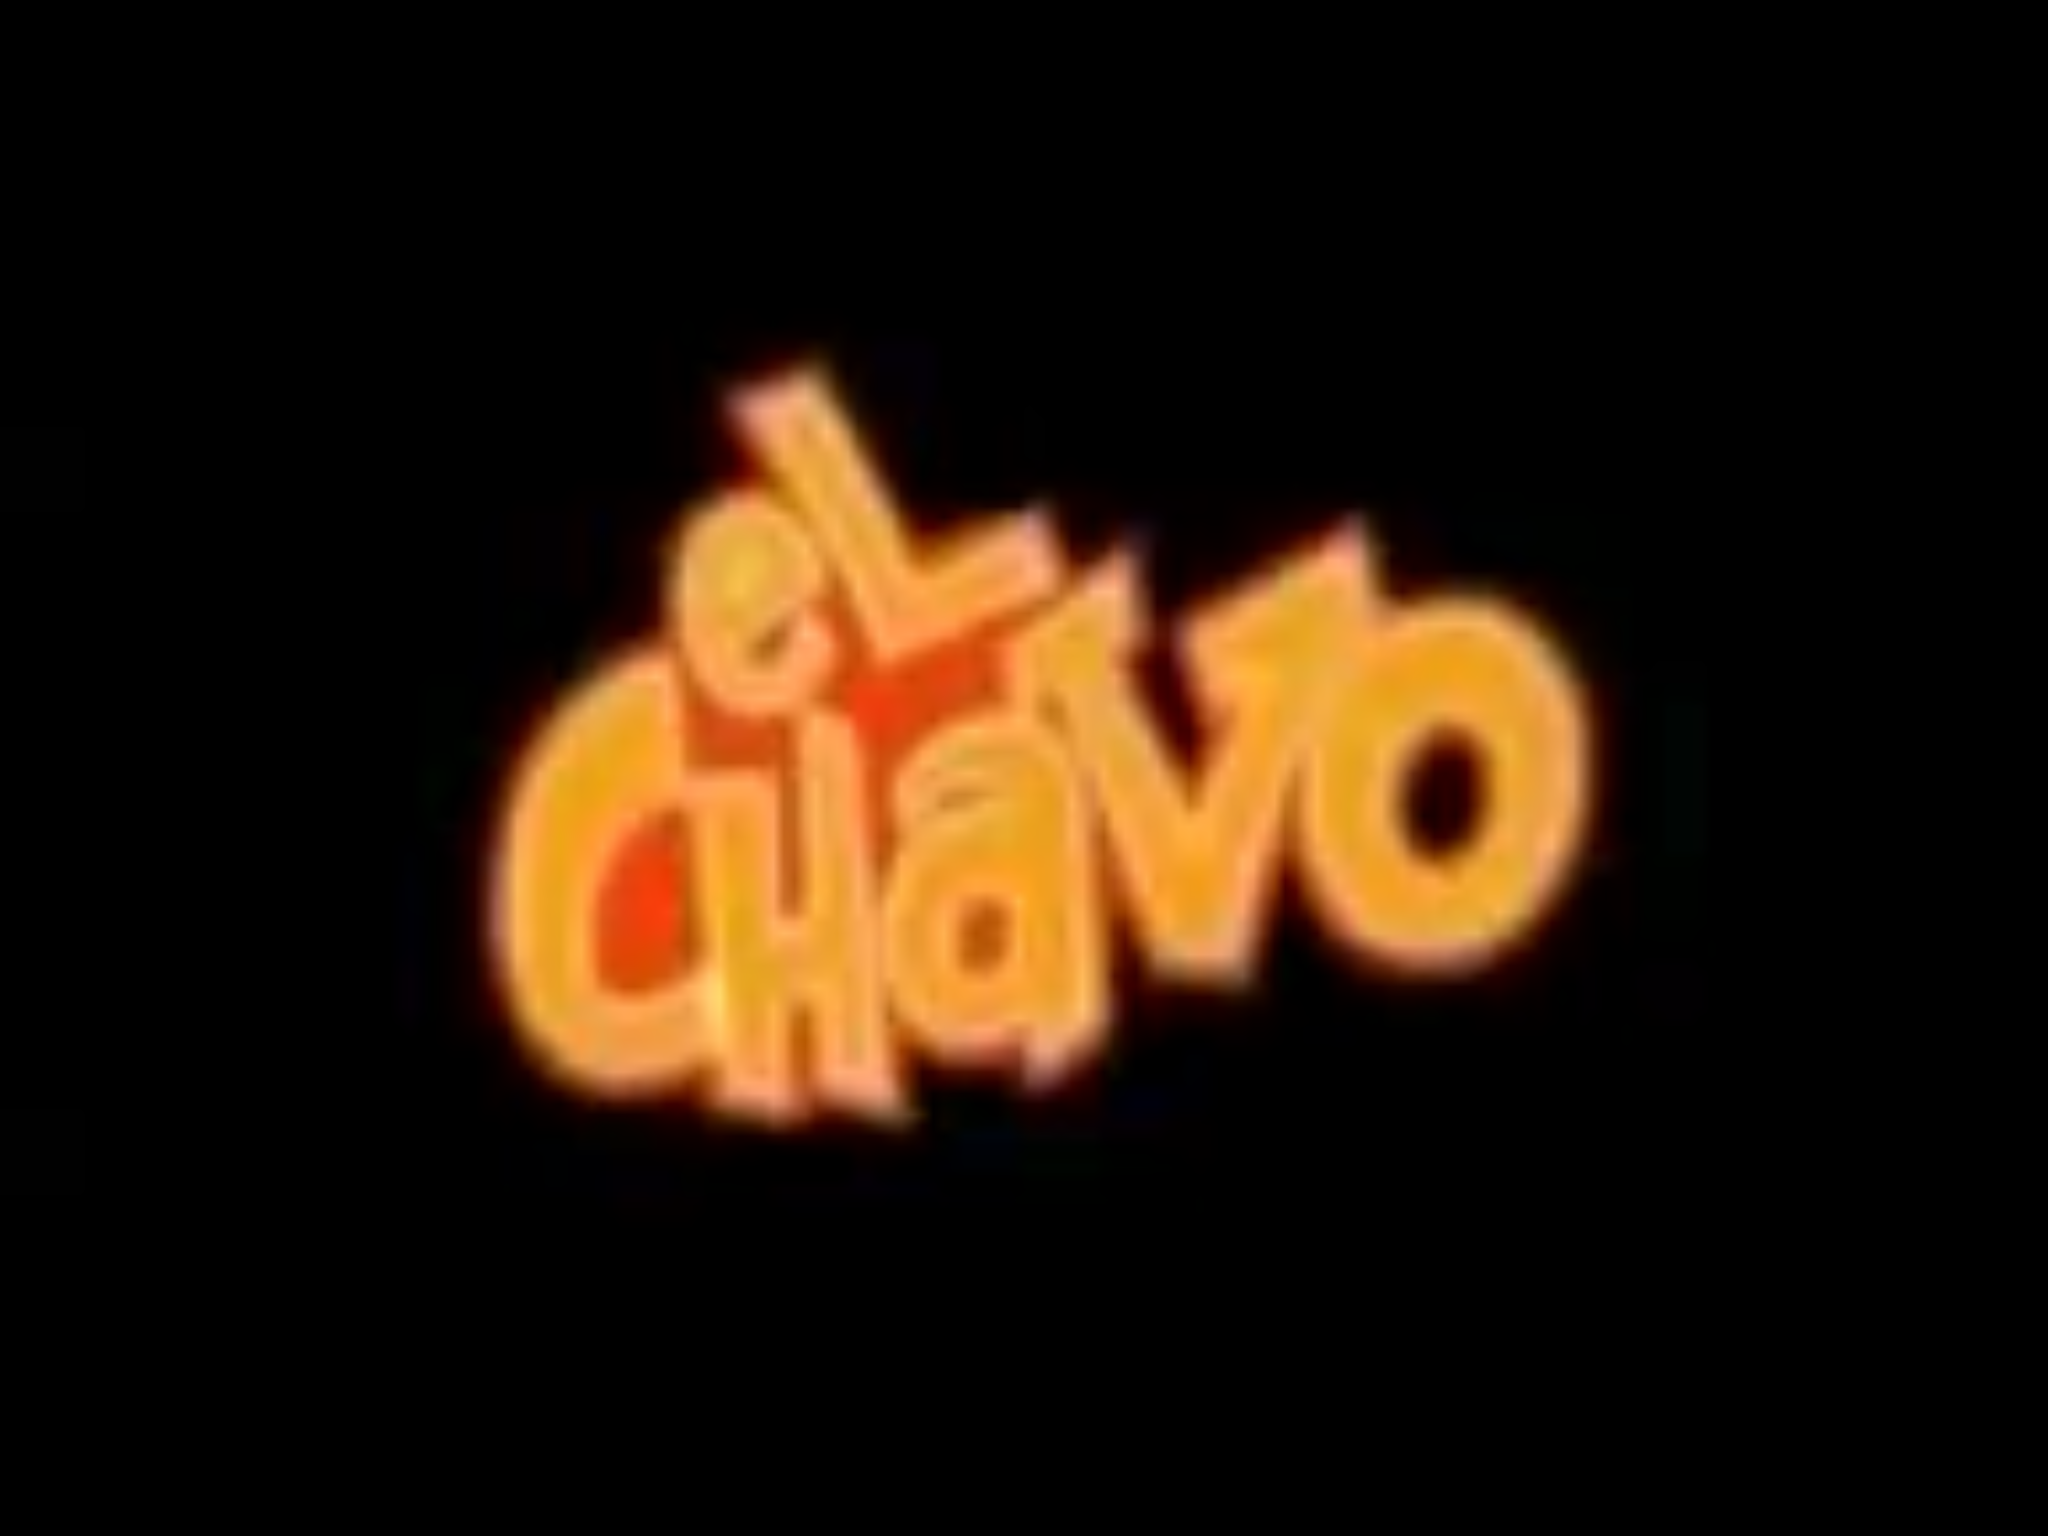 El Chavo Animado | Logopedia | Fandom